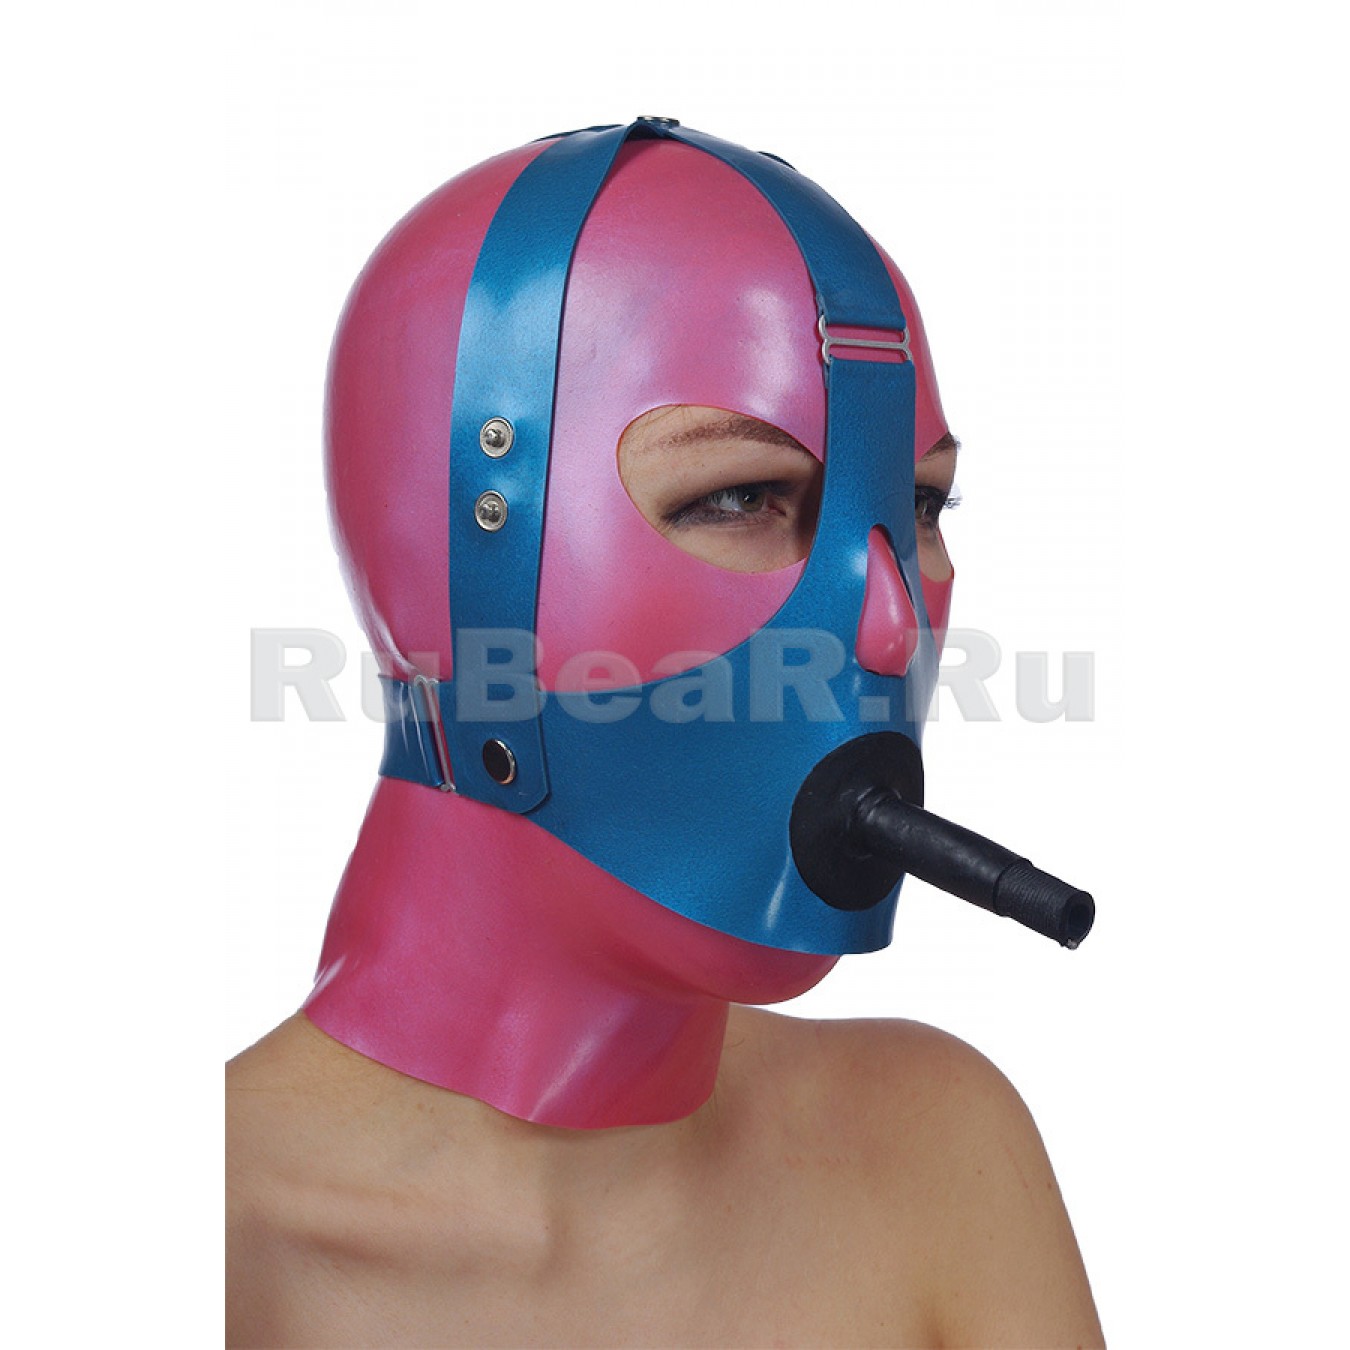 QL6100 Кляп-пробка твердый с трубкой для дыхания, на специальном механизме через голову